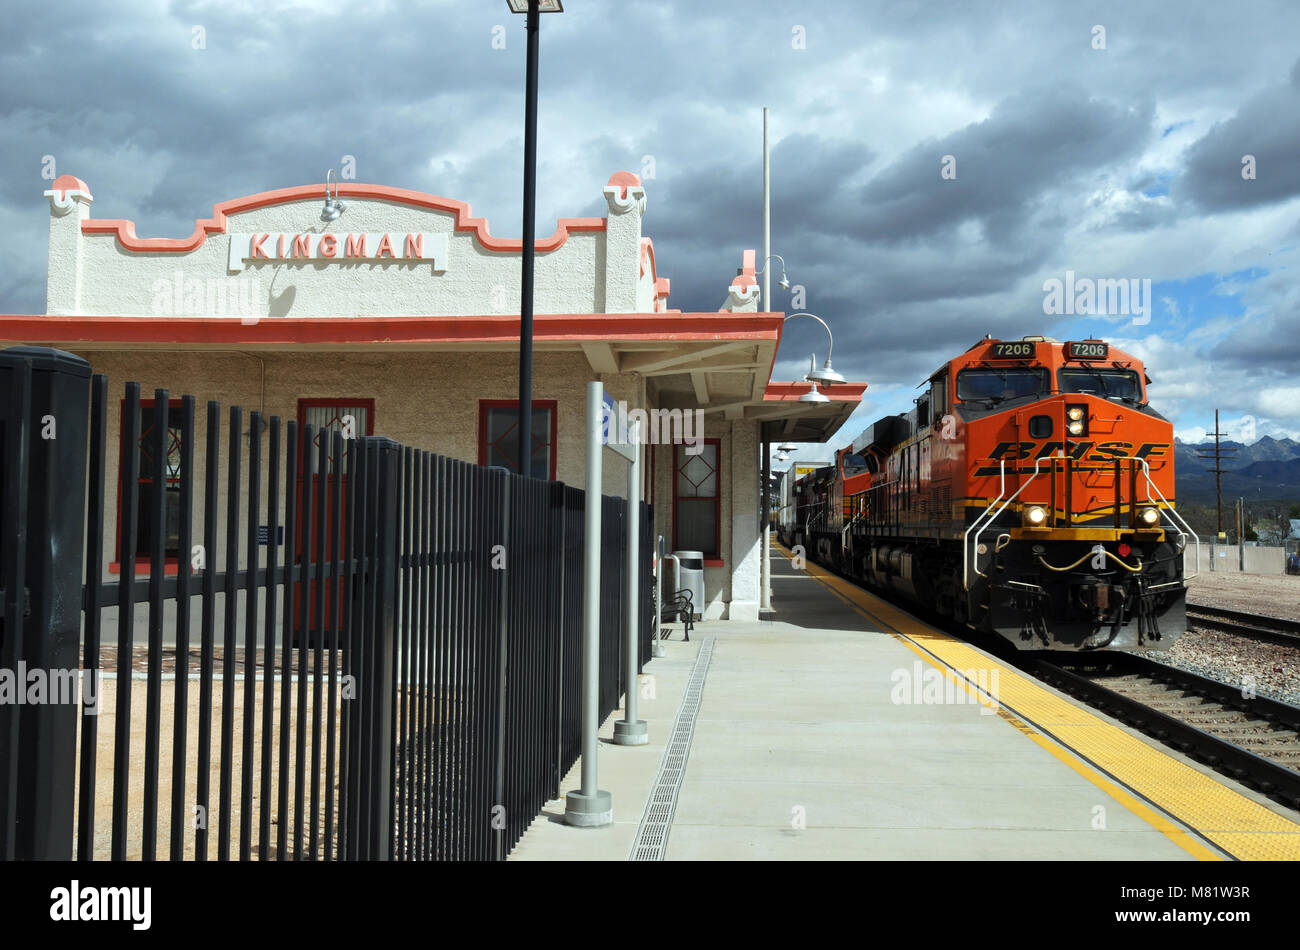 Un train de marchandises gronde au-delà de la Railroad depot restauré de Kingman, Arizona, construit en 1907 et réouvert en 2011 après une longue rééducation. Banque D'Images